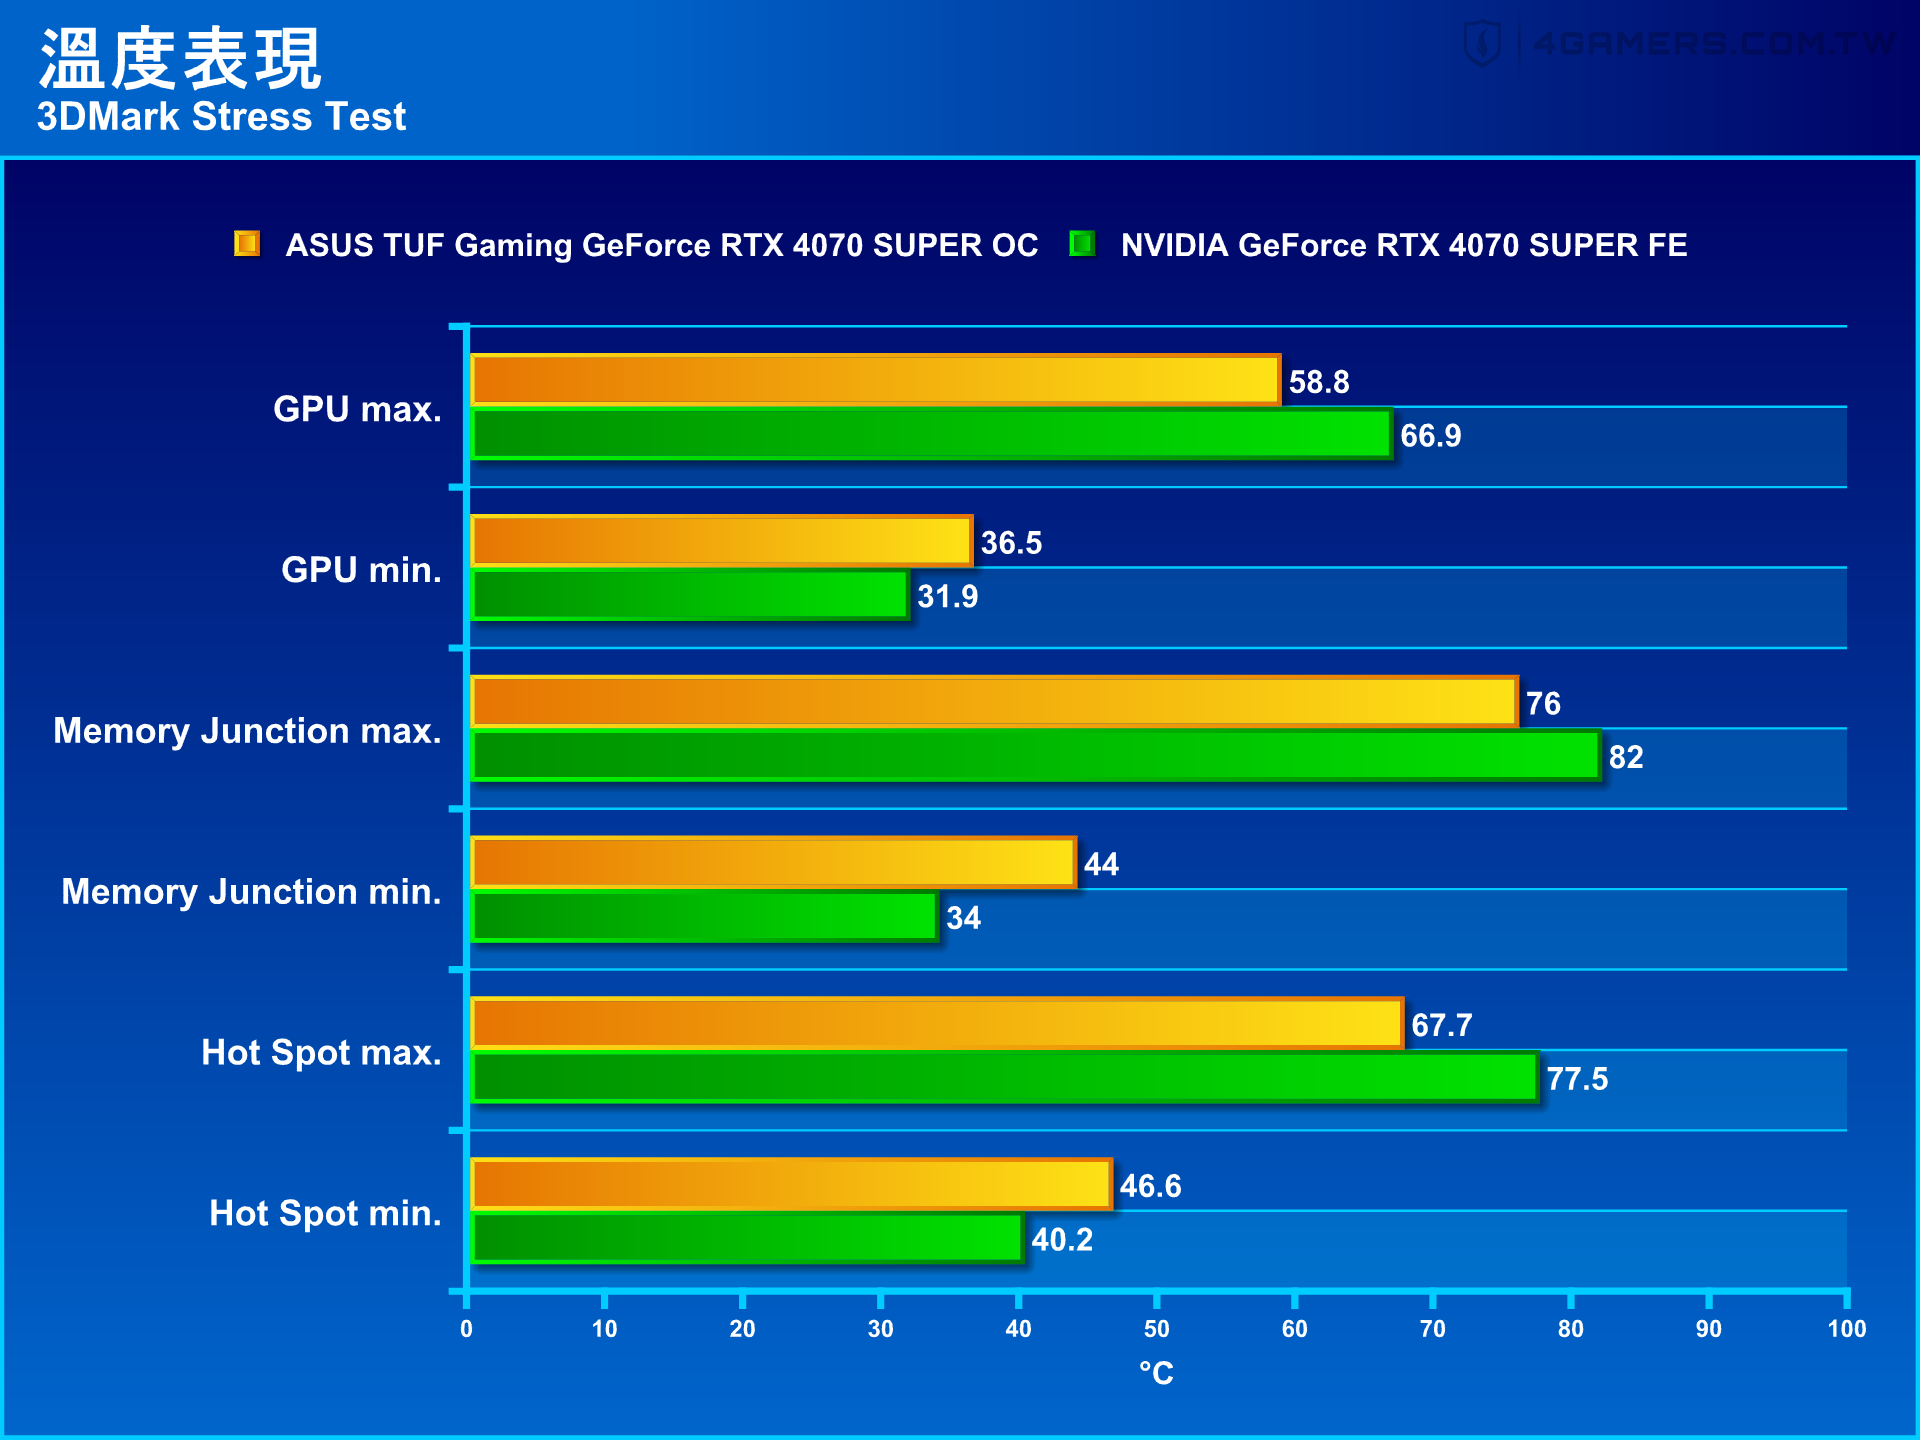 ASUS TUF Gaming GeForce RTX 4070 SUPER